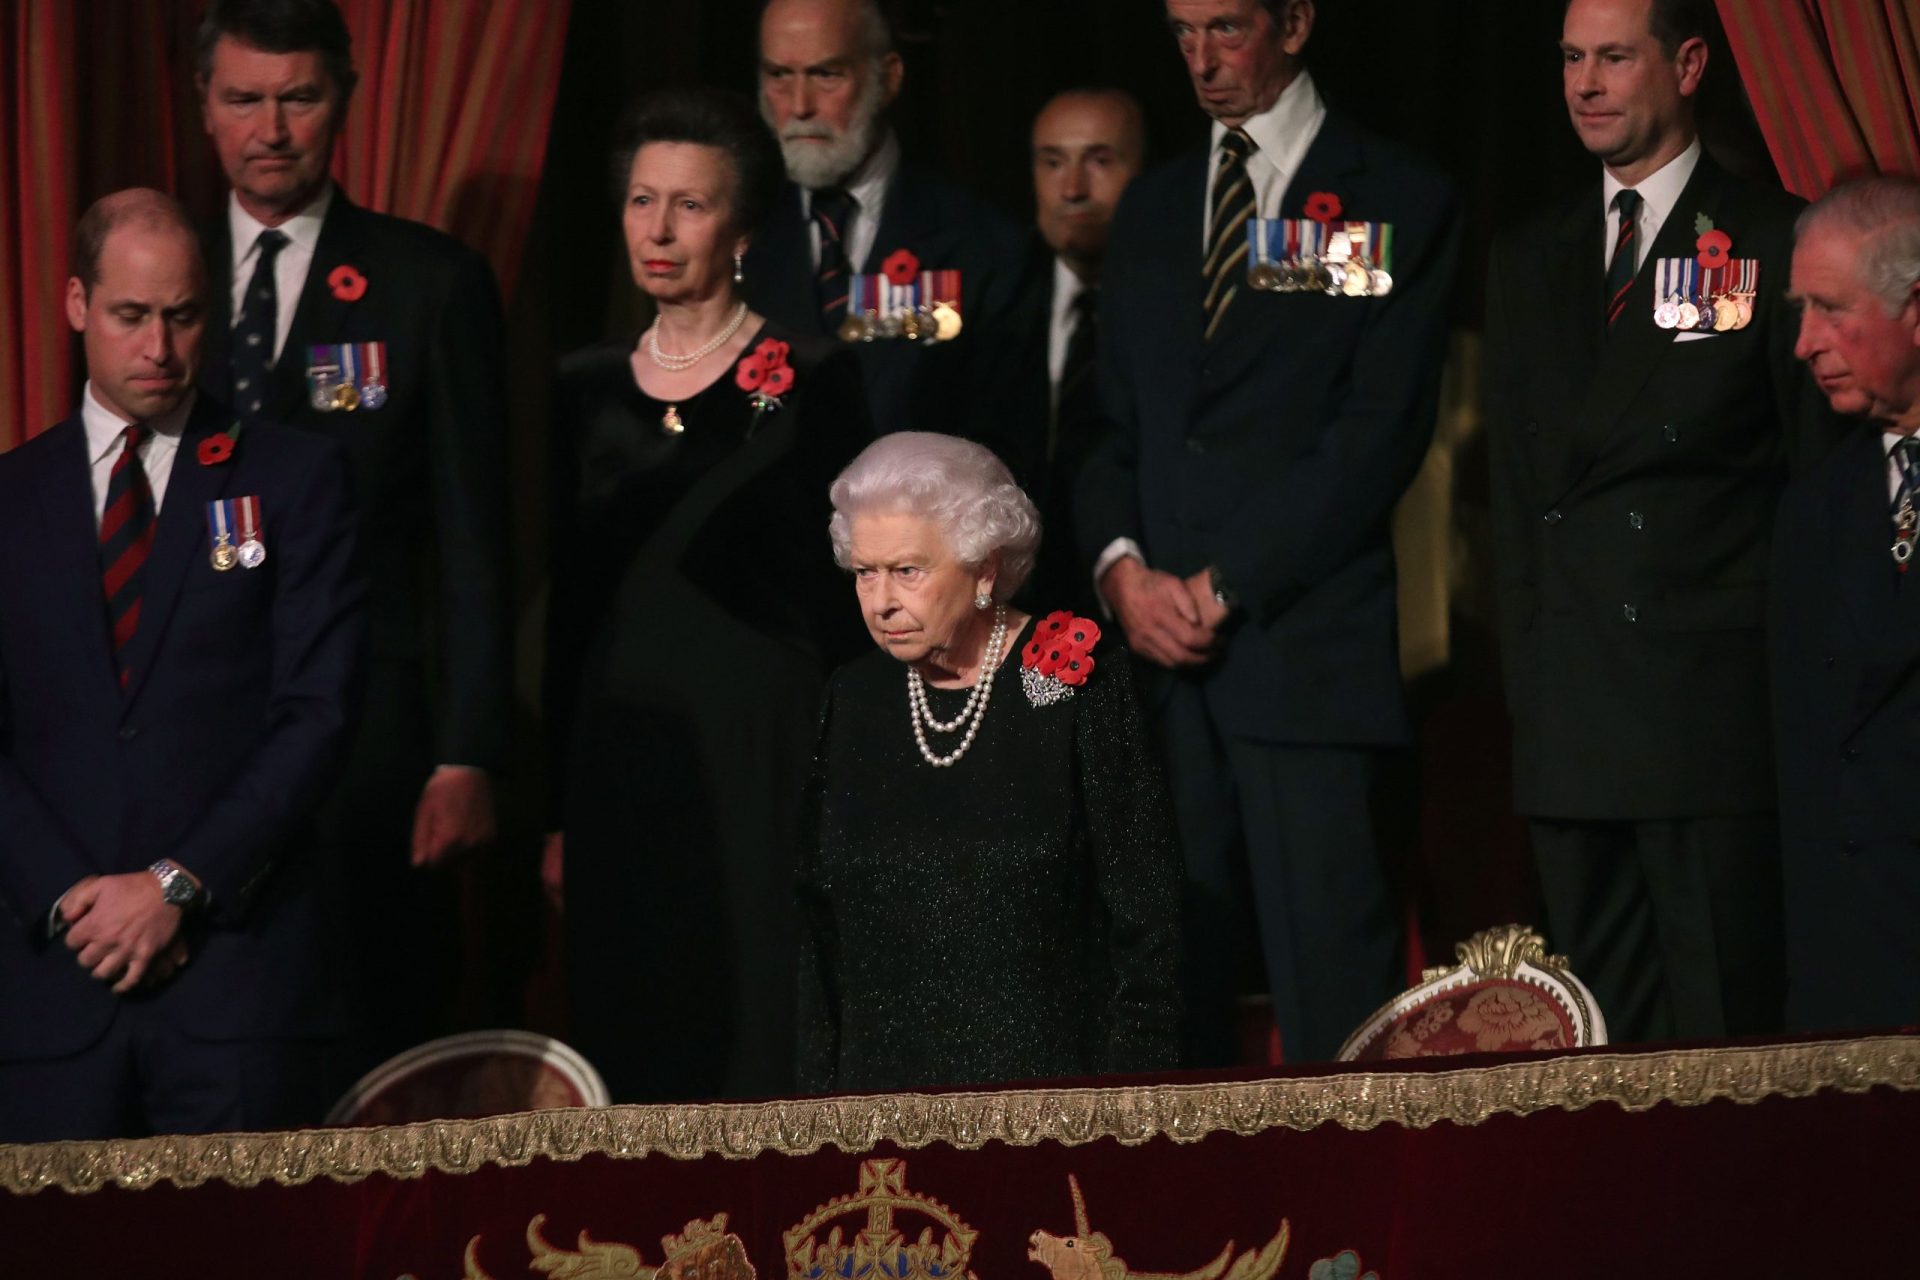 Família real britânica divulga imagens para assinalar 70.º aniversário do príncipe Carlos | FOTOS